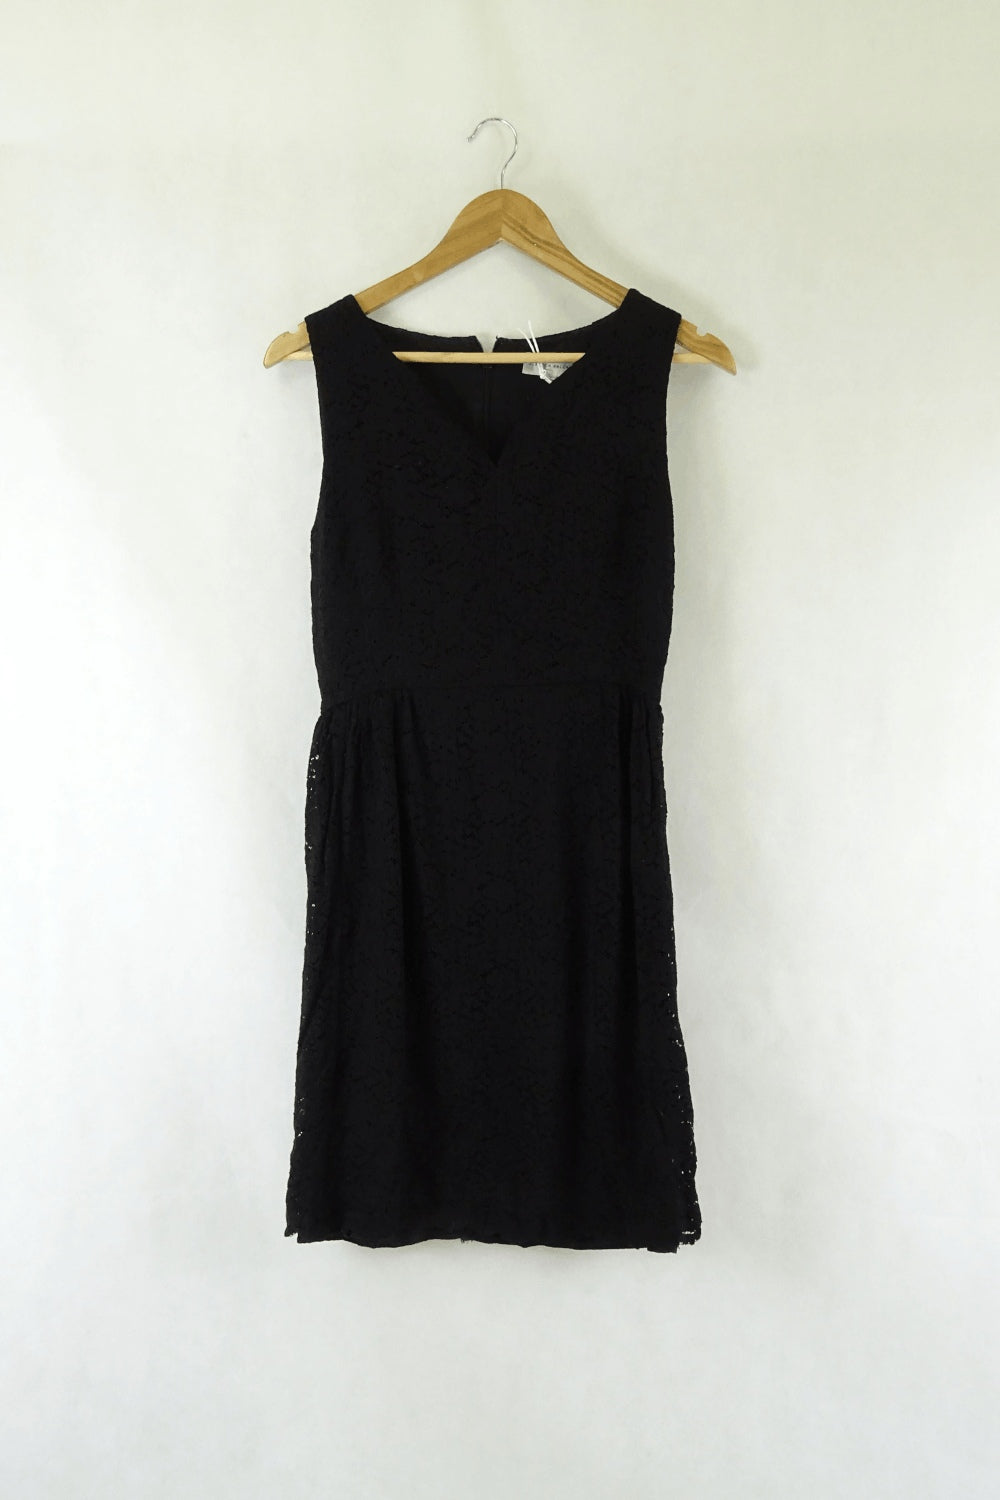 Rebecca Vallance Lace Black Dress 10